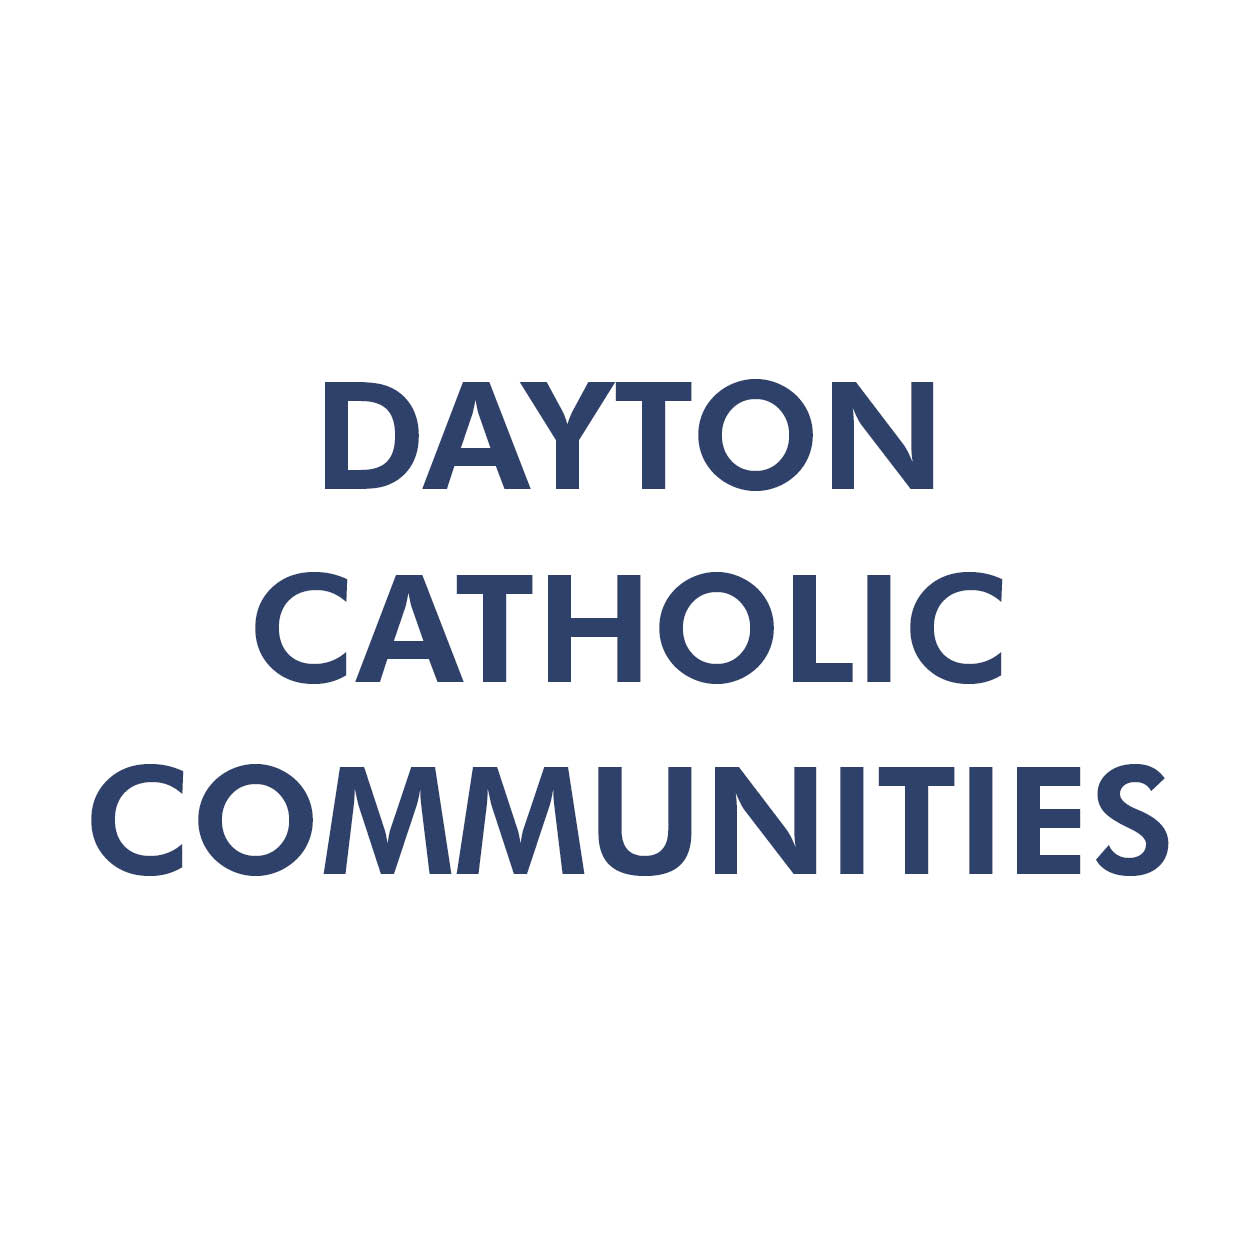 DAYTON CATHOLIC COMMUNITIES